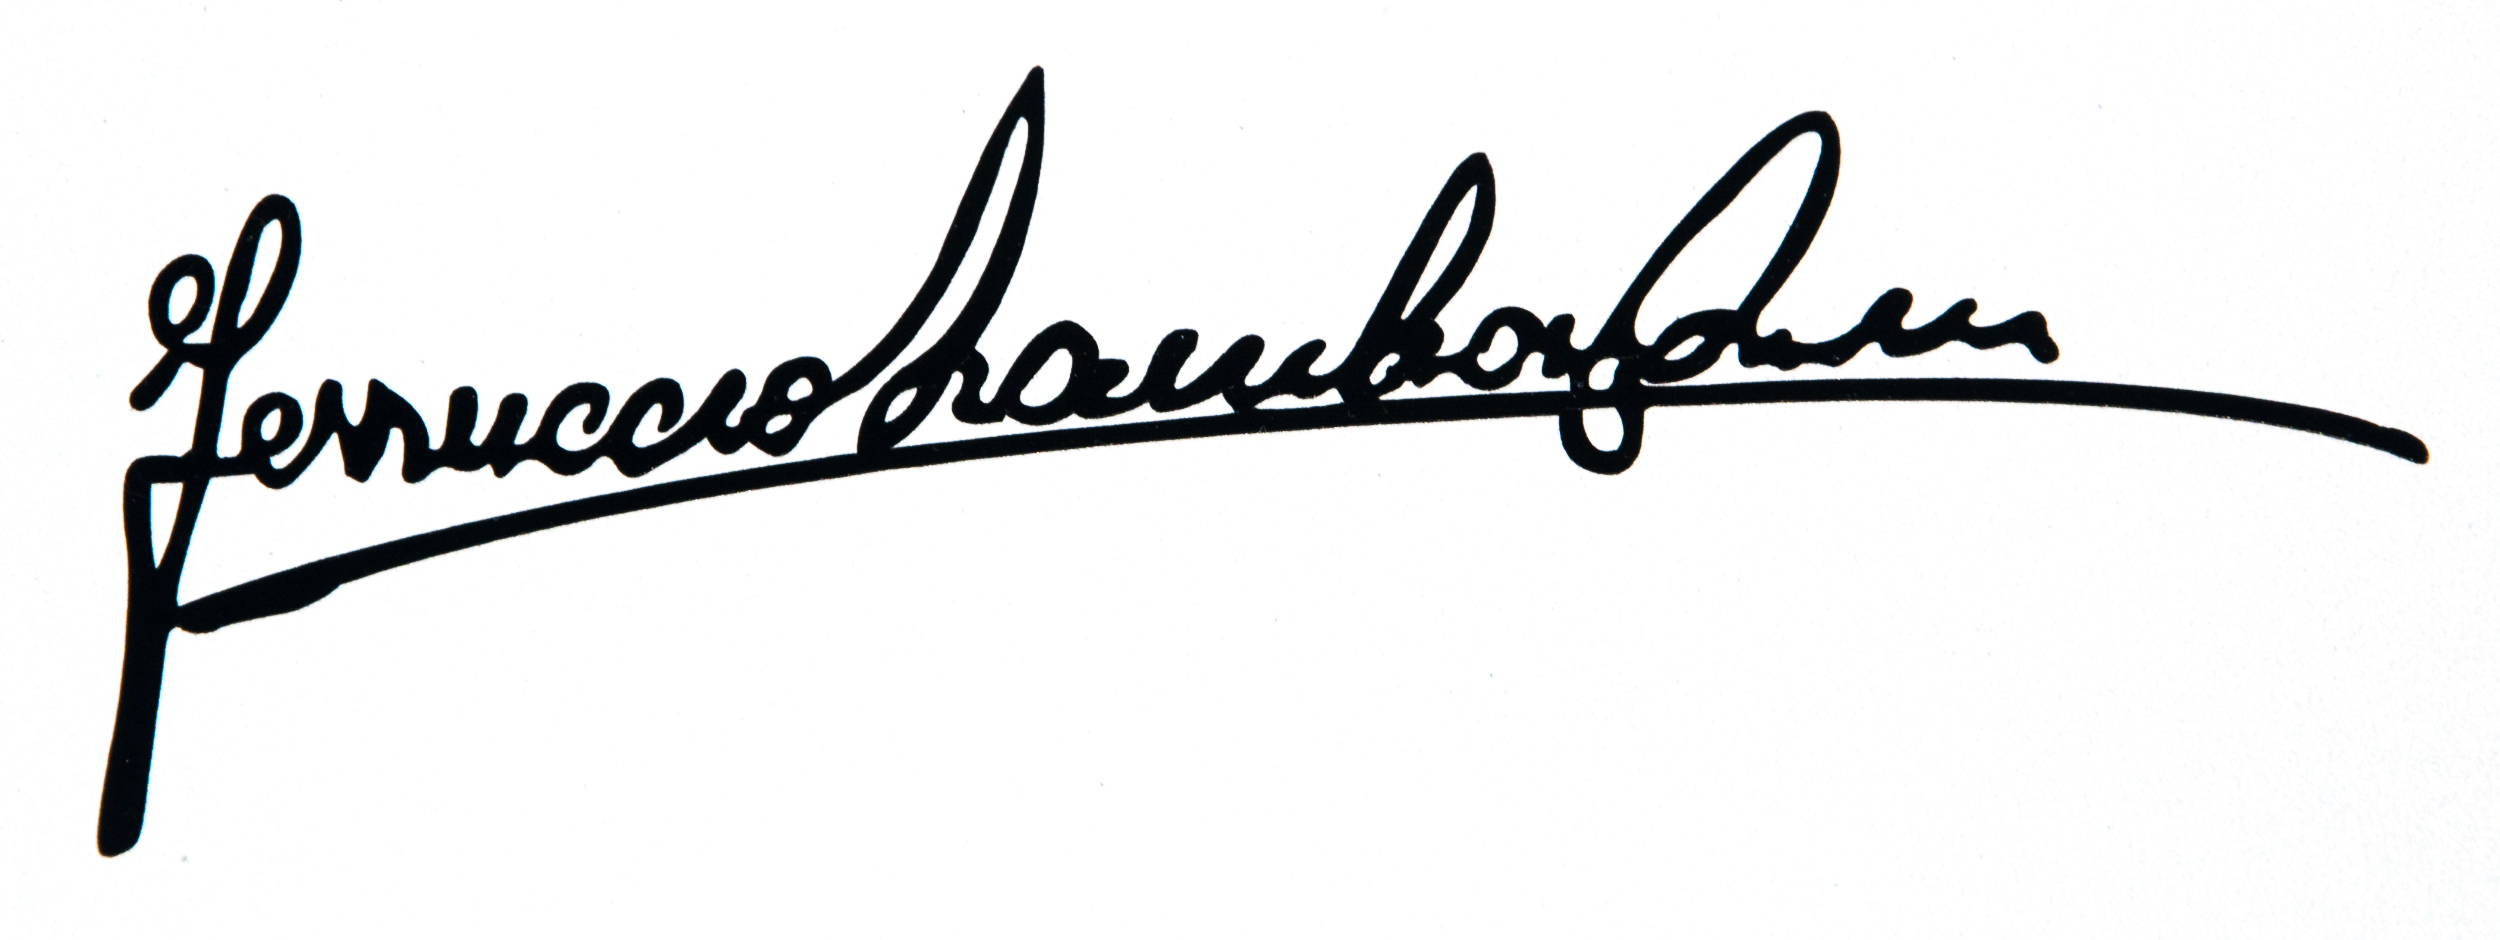 Ferruccio_Lamborghini_autograph.jpg